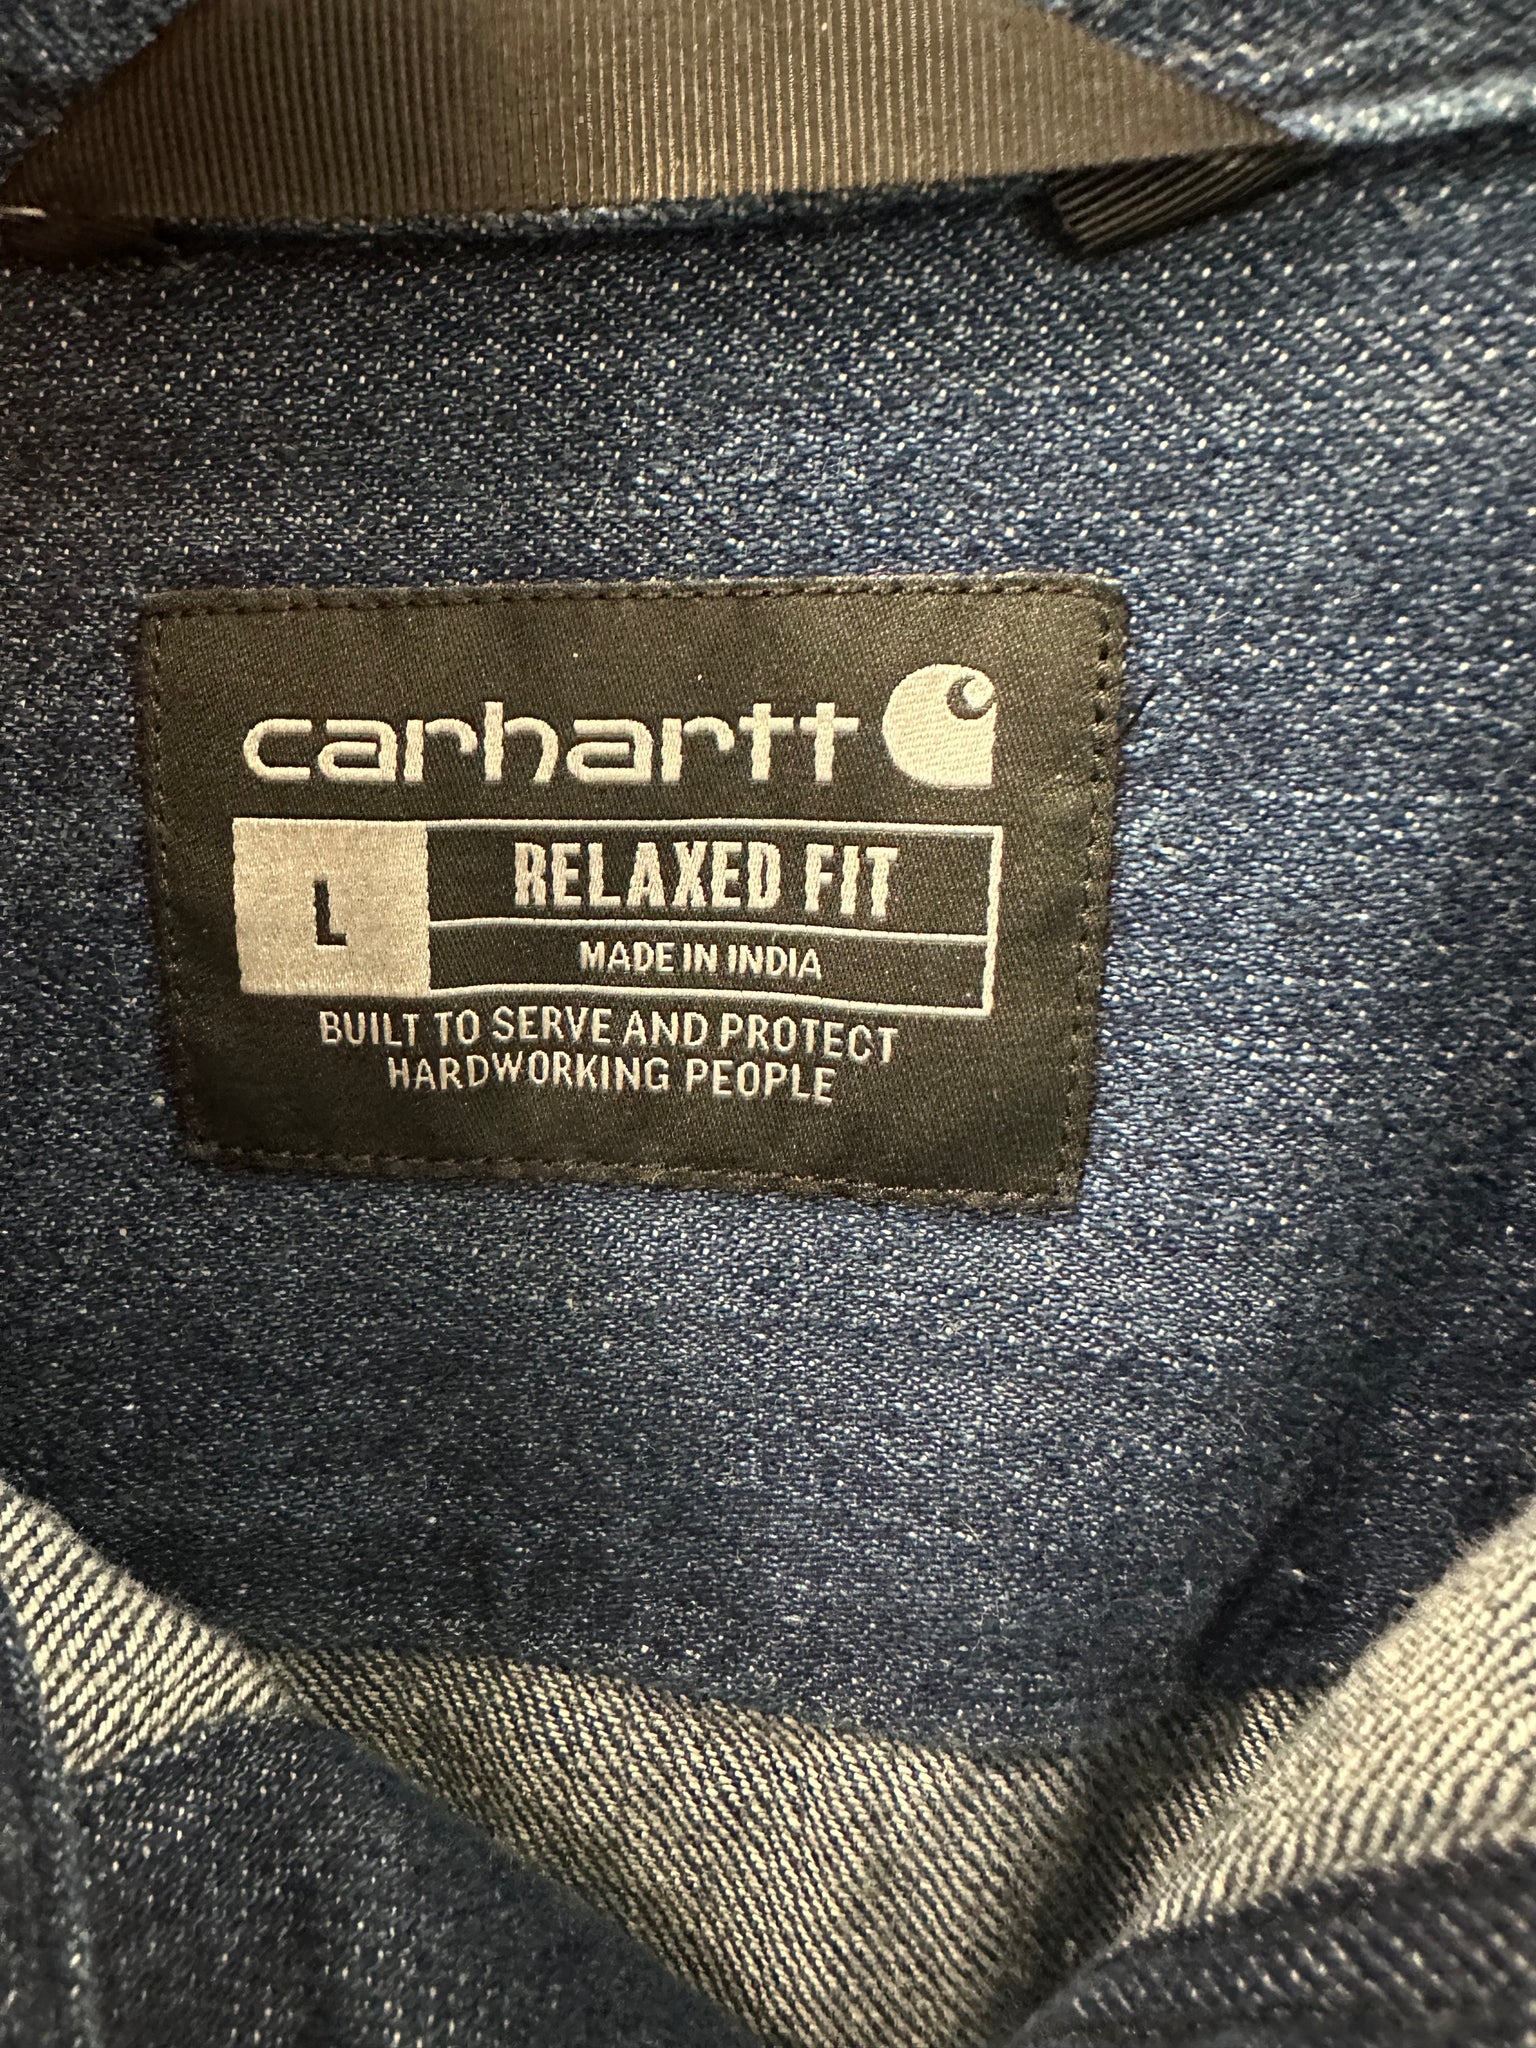 Carhartt Relaxed Fit Heavyweight Denim Long-Sleeve Shirt